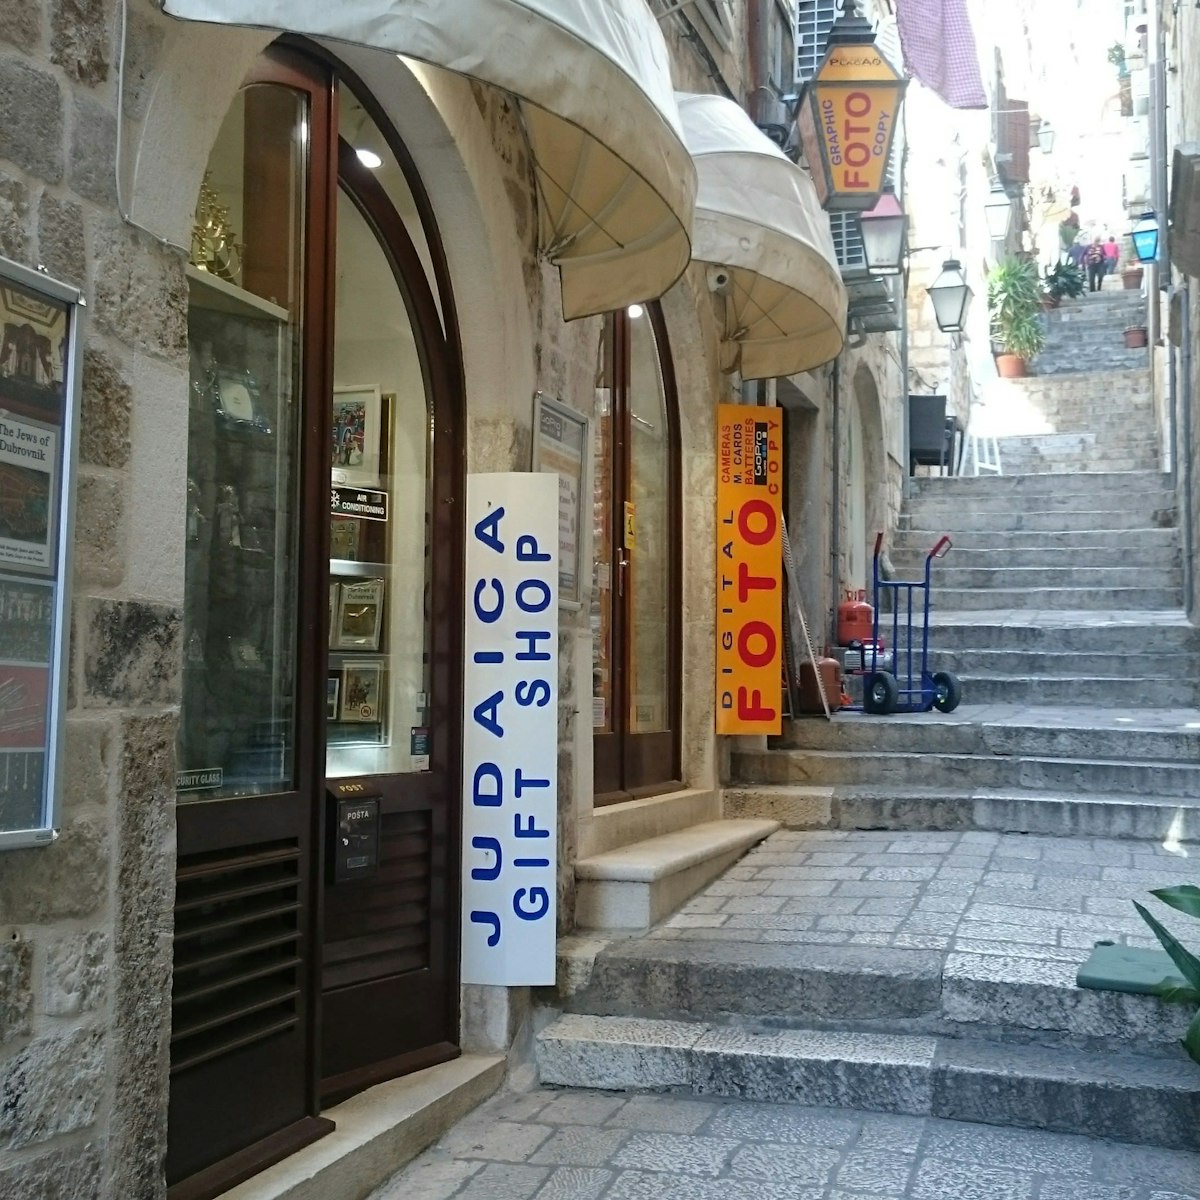 The view of Judaica shop and Photo studio Placa entrances